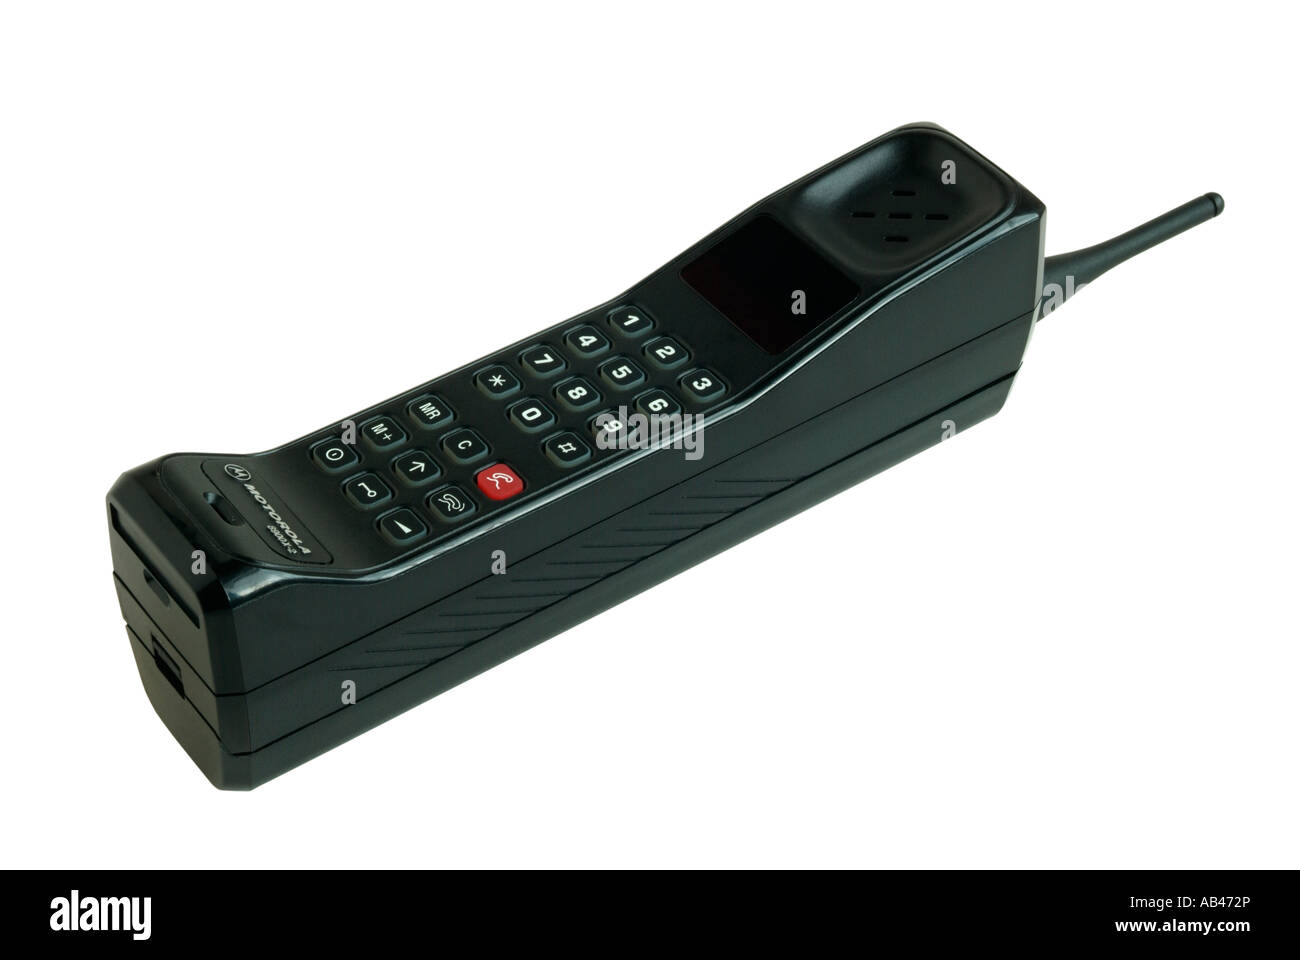 In vecchio stile Motorola 8900X-2 analogico del telefono mobile Foto Stock